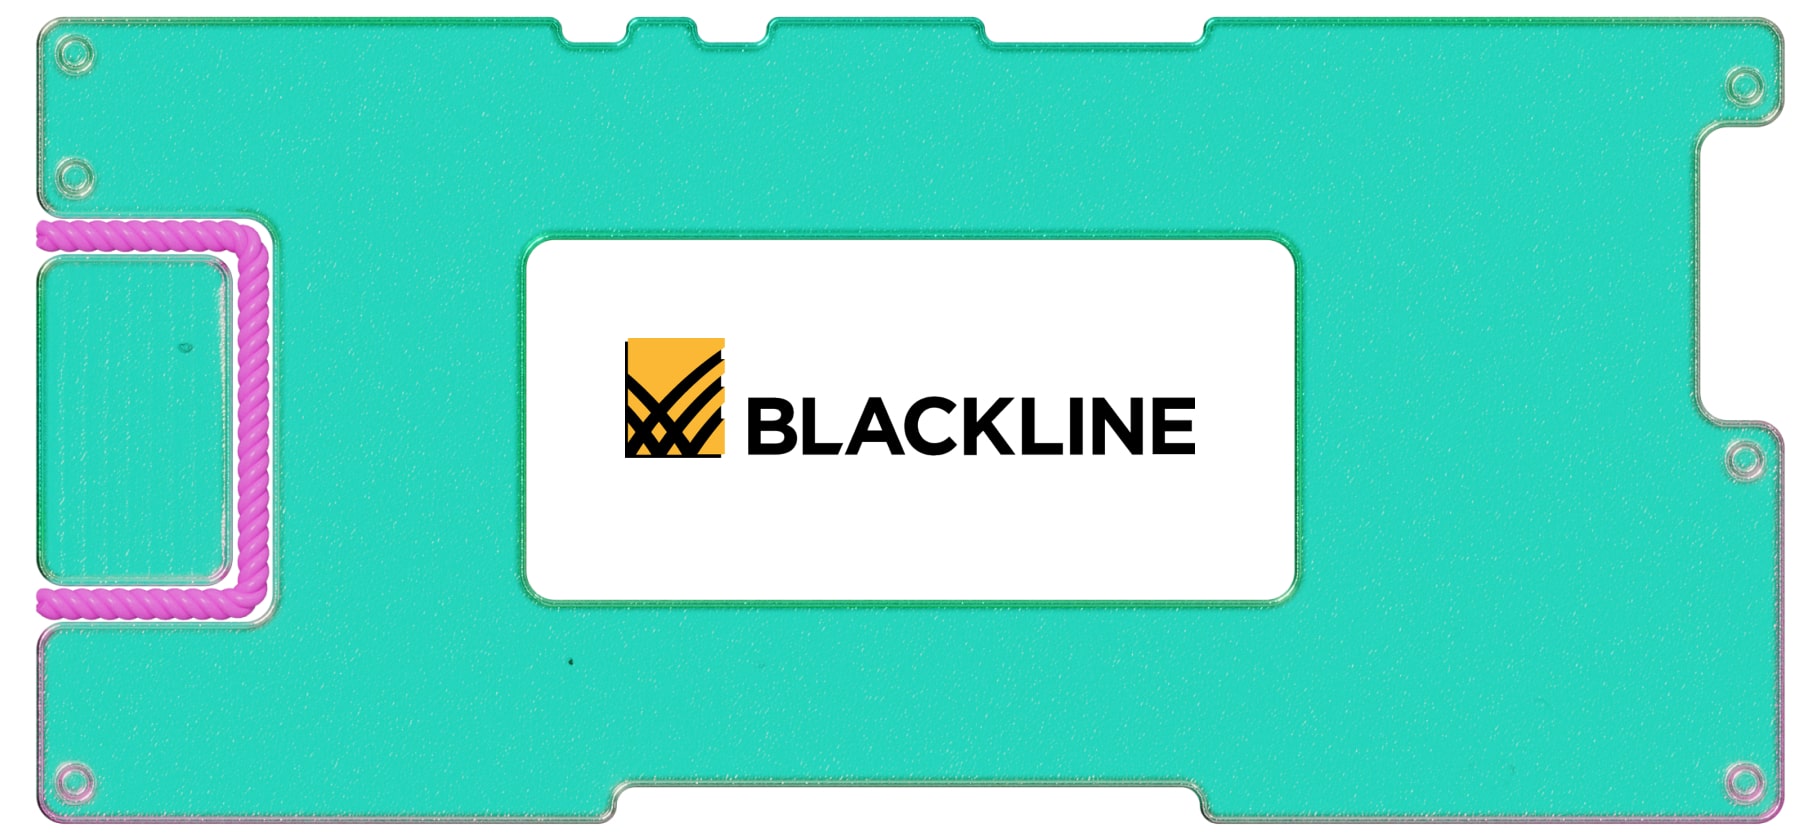 Инвестидея: Blackline, потому что деньги не спят